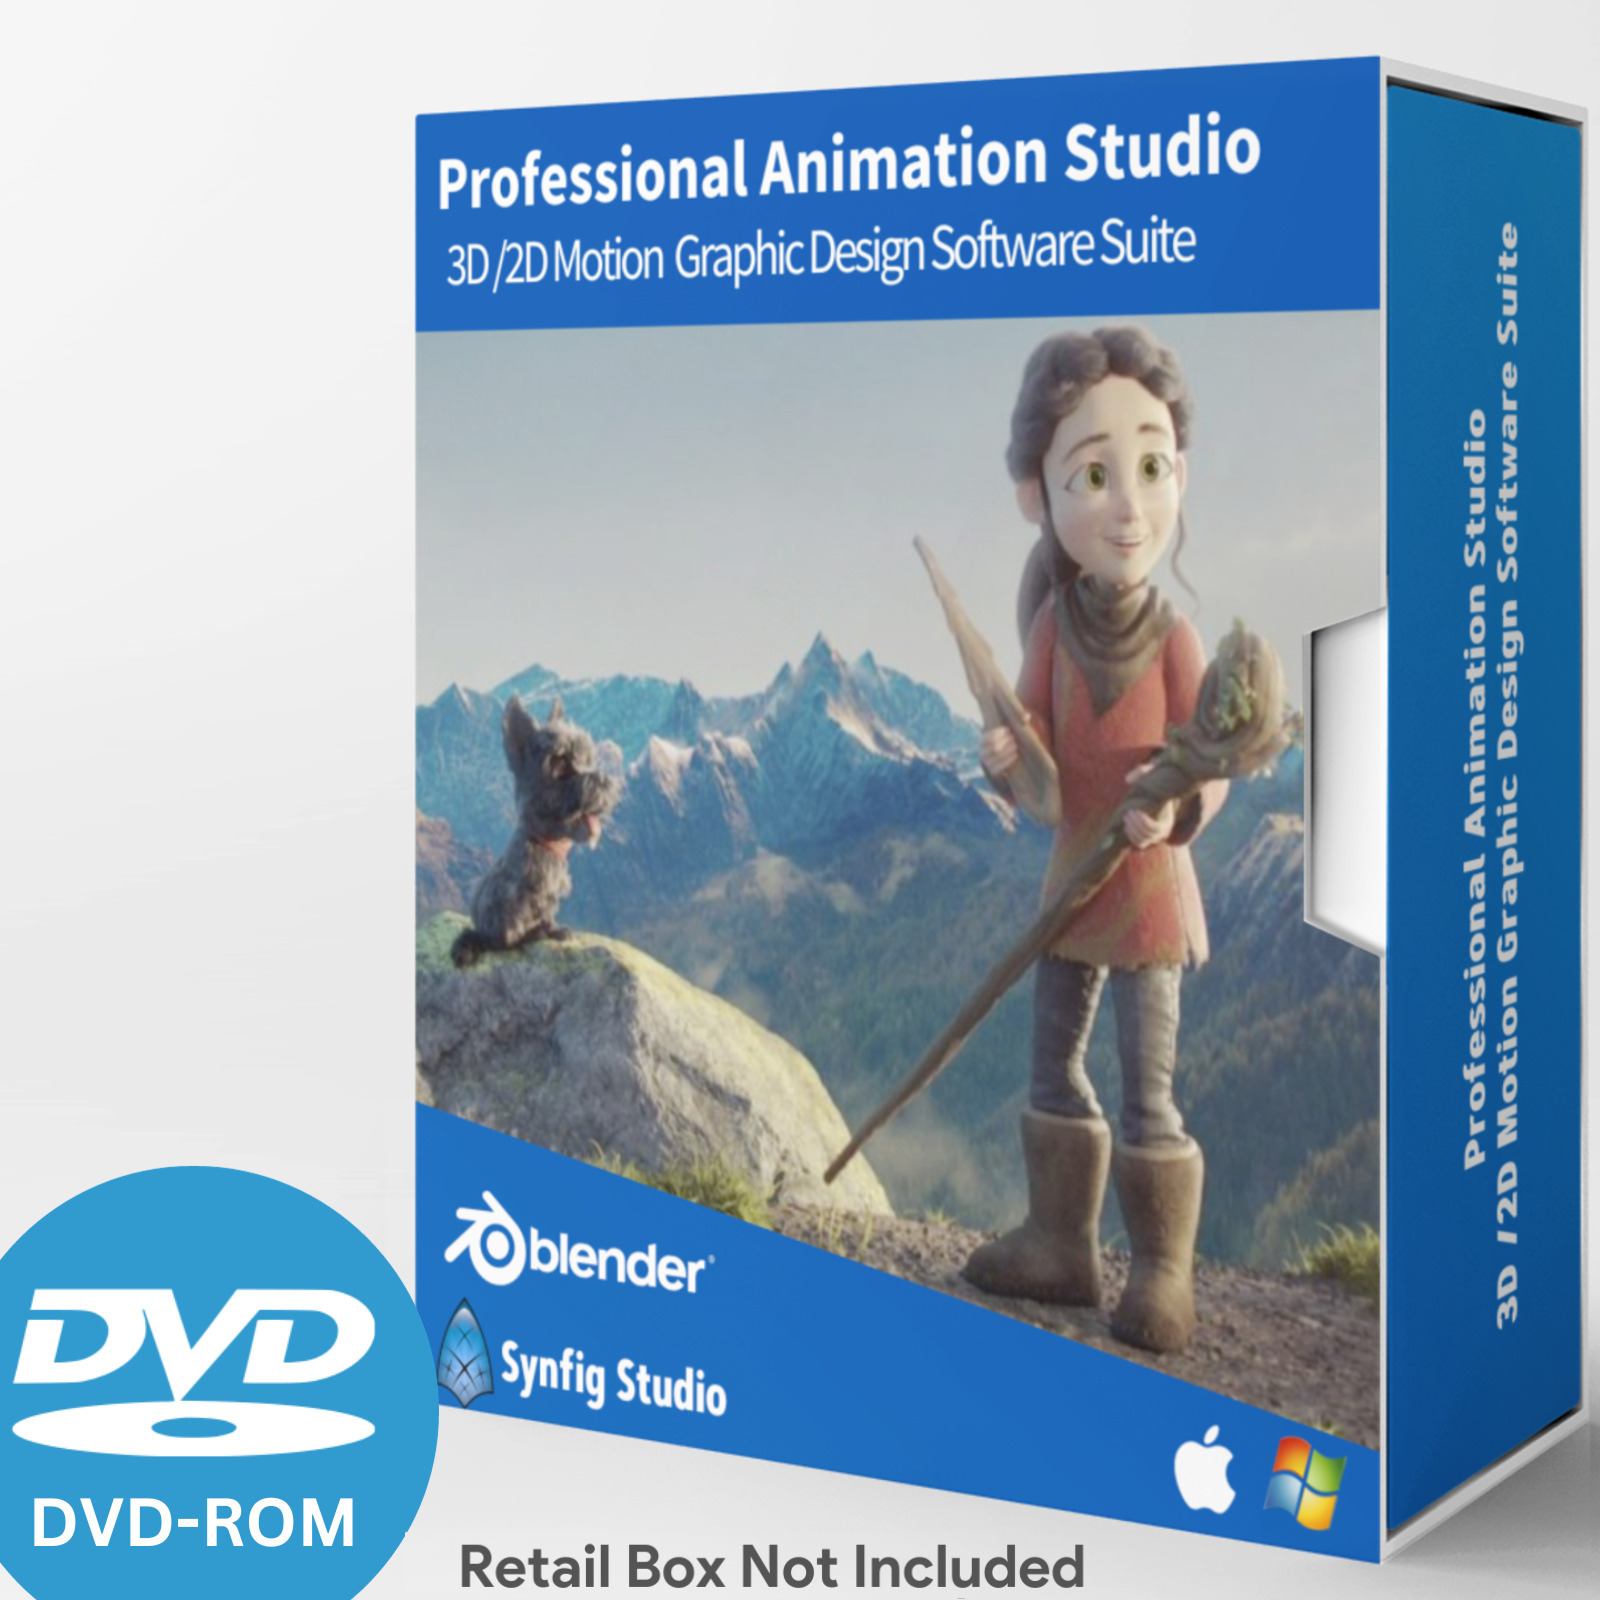 Animation Studio- PRO 3D/2D Motion Graphic Design Software Suite-DVD Windows/Mac